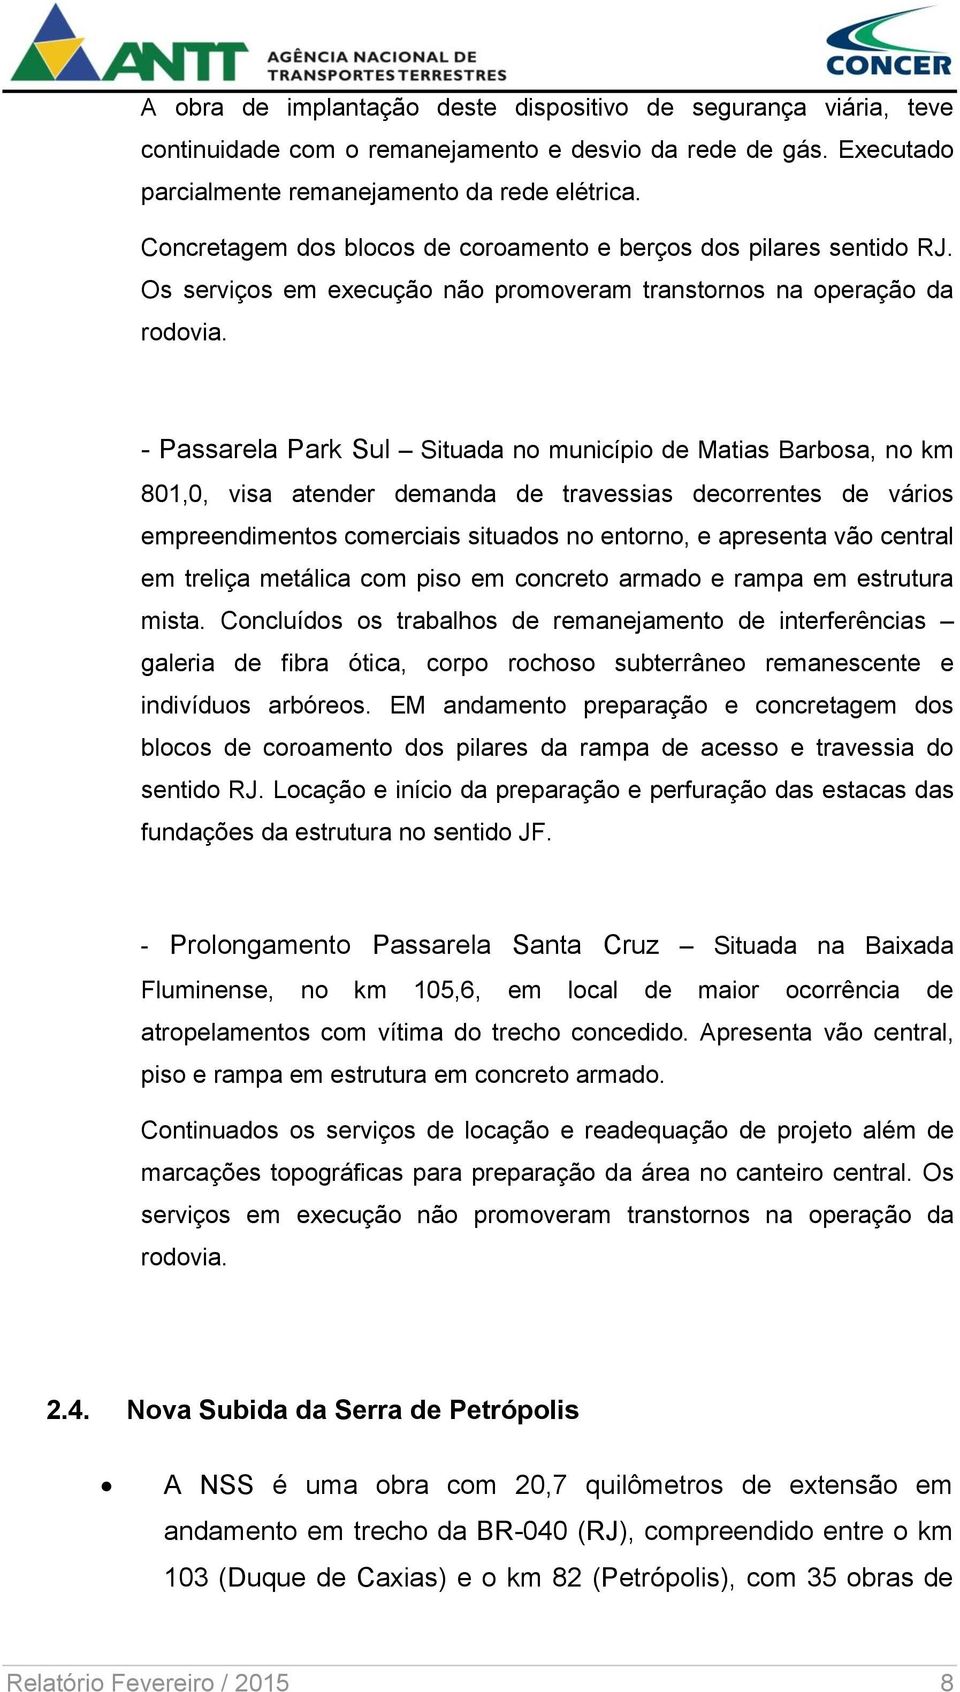 - Passarela Park Sul Situada no município de Matias Barbosa, no km 801,0, visa atender demanda de travessias decorrentes de vários empreendimentos comerciais situados no entorno, e apresenta vão